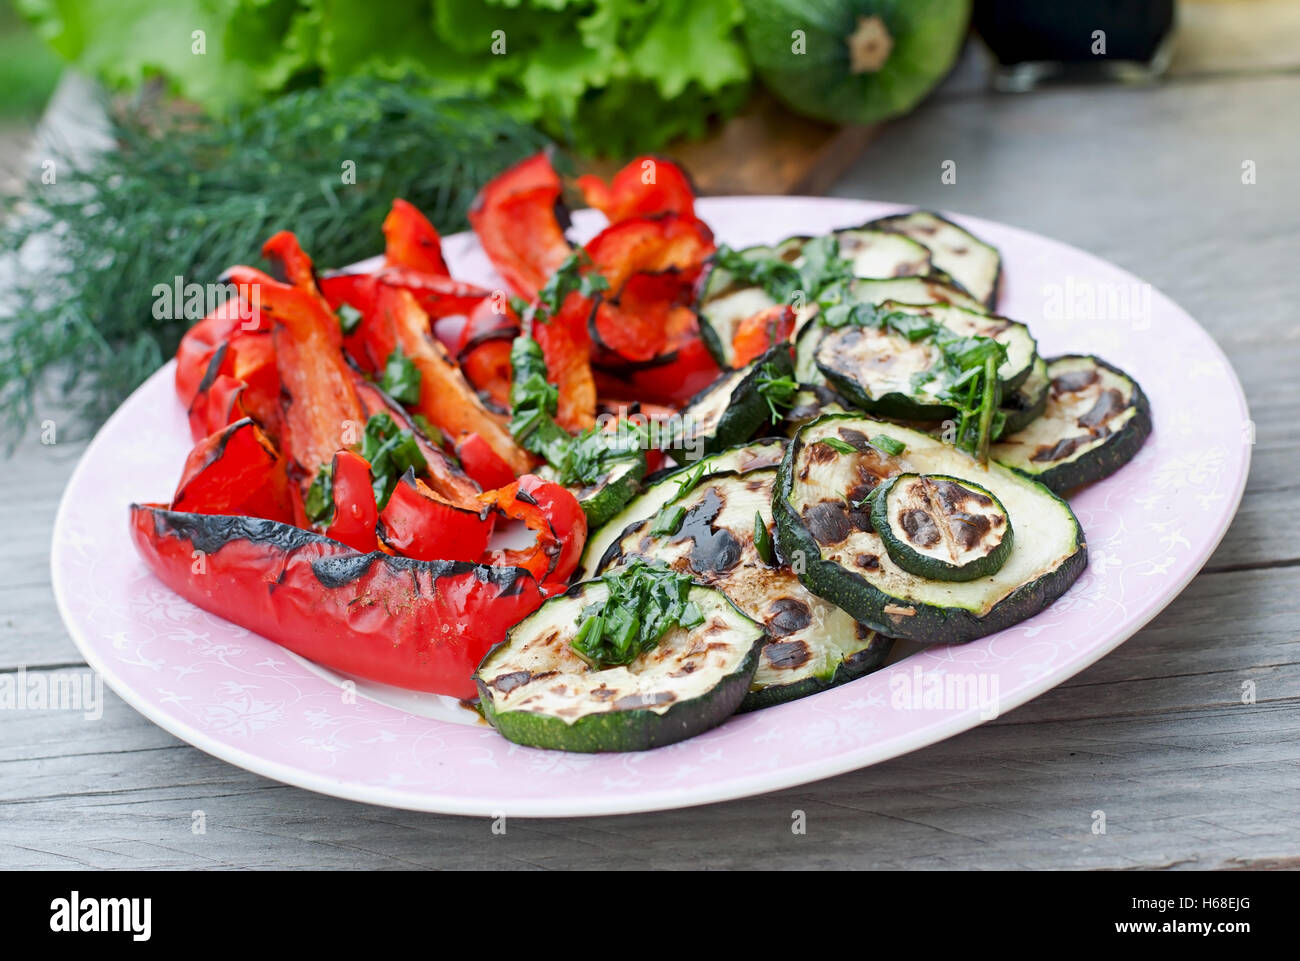 Piatto di verdure alla griglia (zucchine, il peperone e la cipolla rossa) Foto Stock